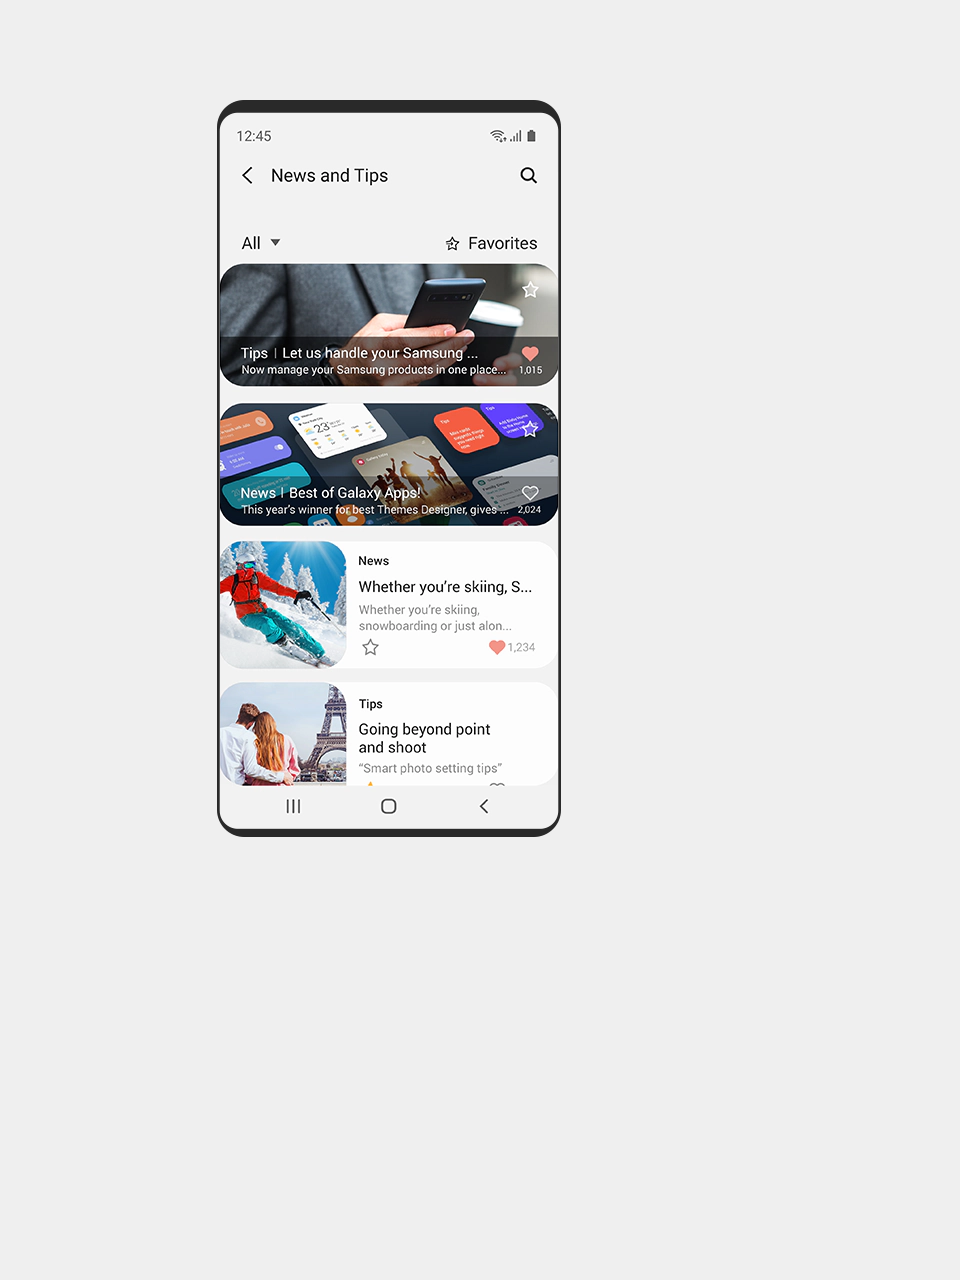 Vista de pantalla móvil de las noticias y novedades en Samsung Members